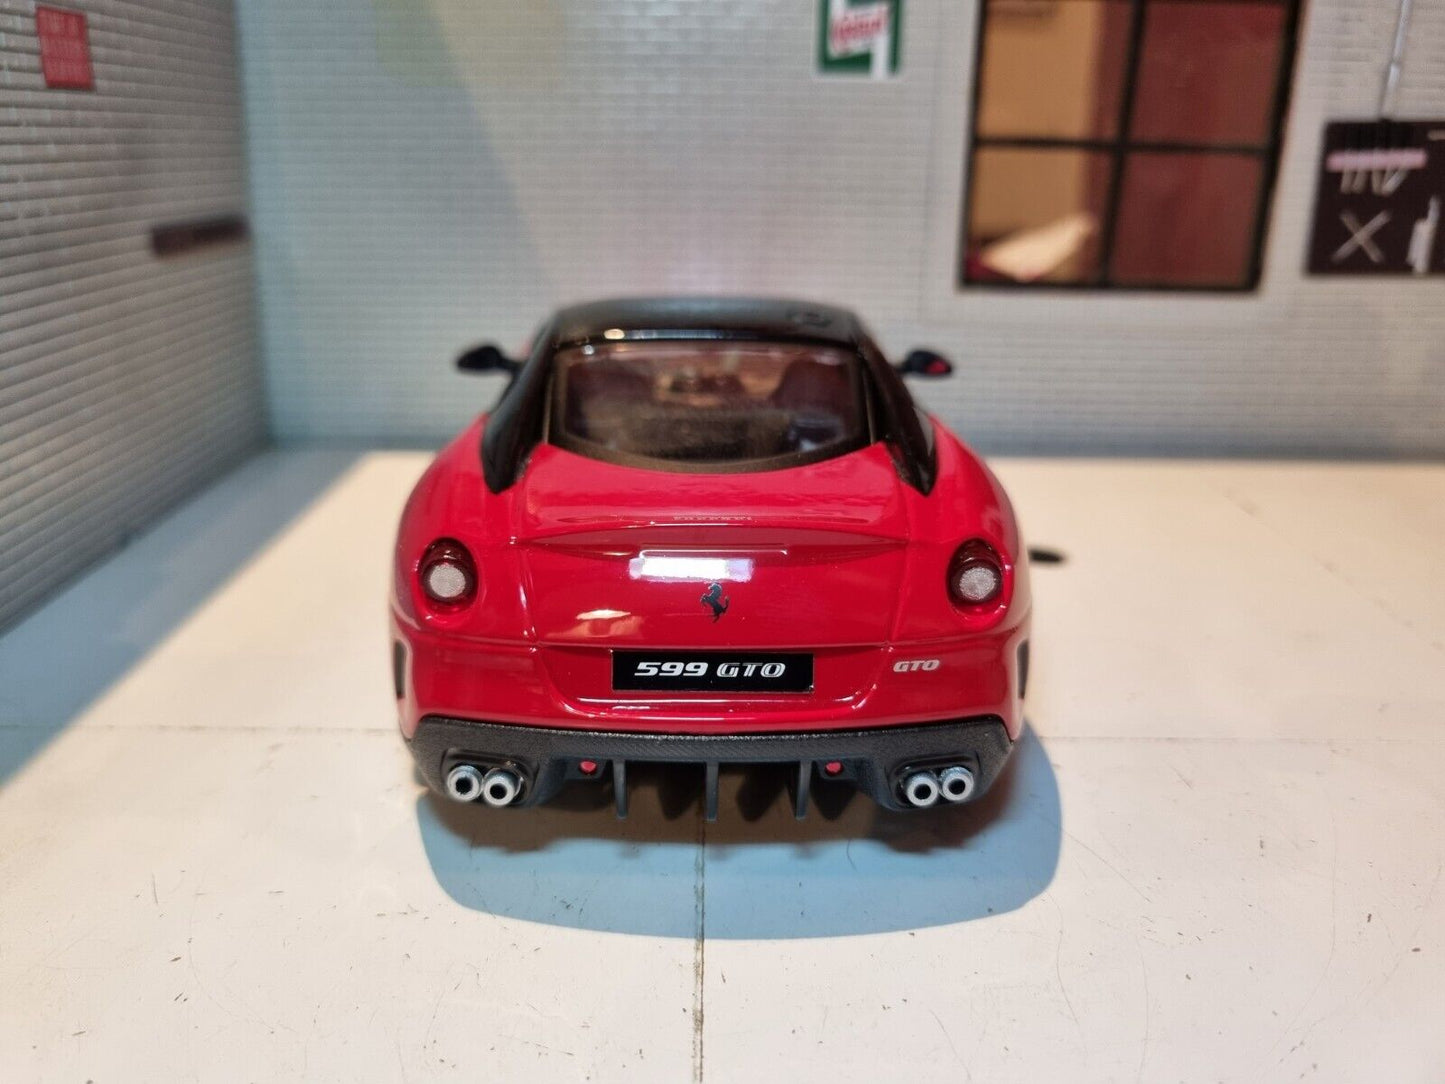 Ferrari 599 GTO 26019 Bburago 1:24